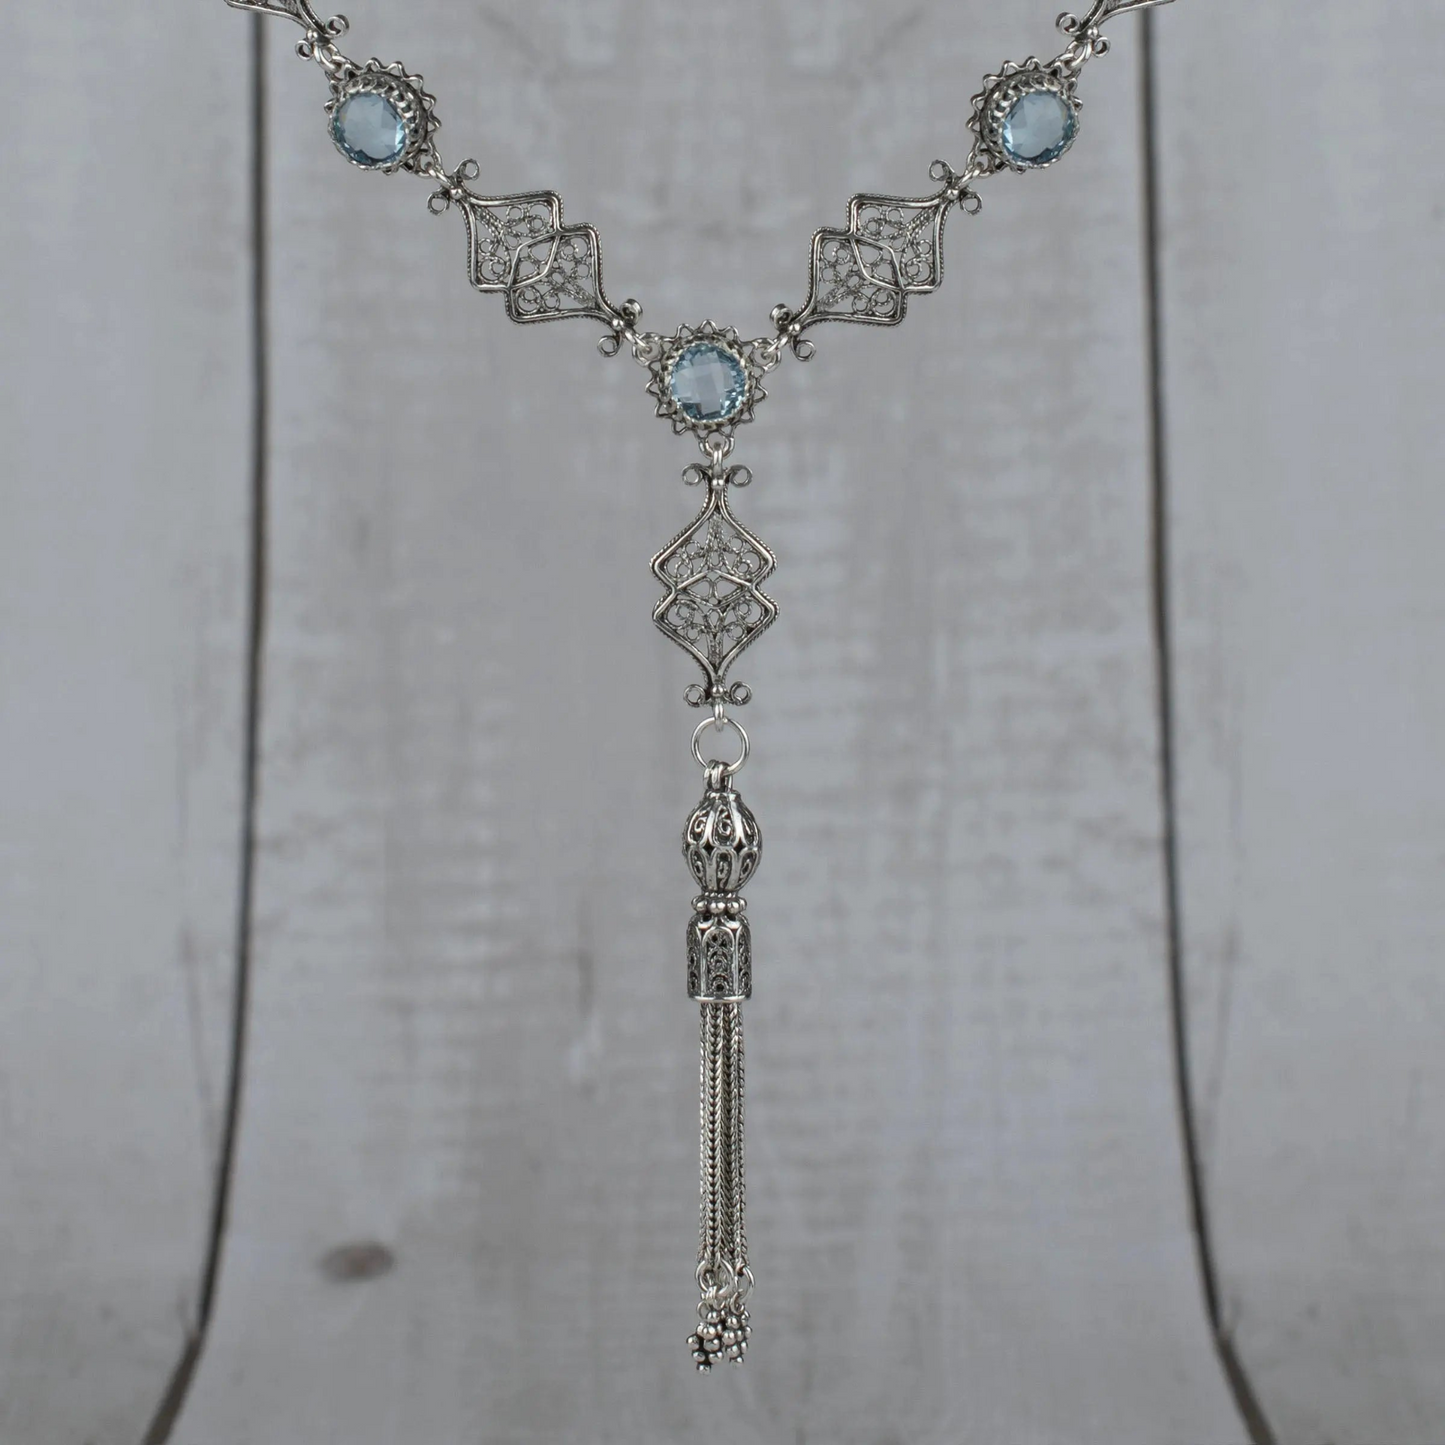 Filigree Art Amethyst / Blue Topaz Gemstone Women Silver Tassel Choker Necklace